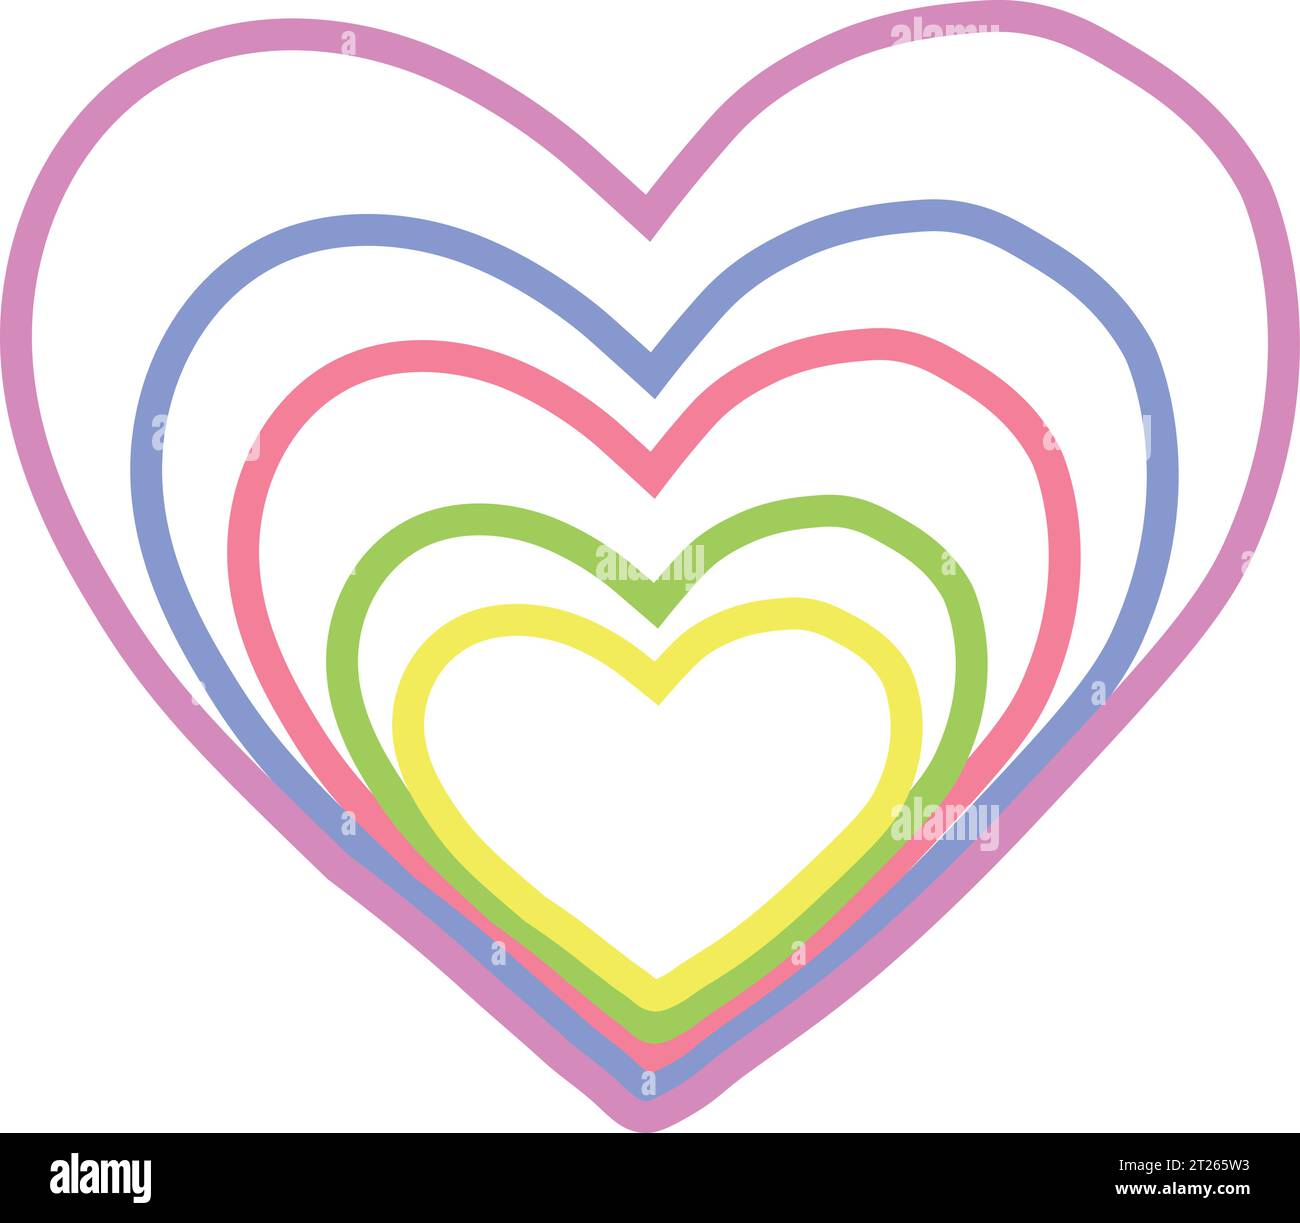 Kokoro - Heart Logo Template Stock Vector - Illustration of couple, pink:  133896584